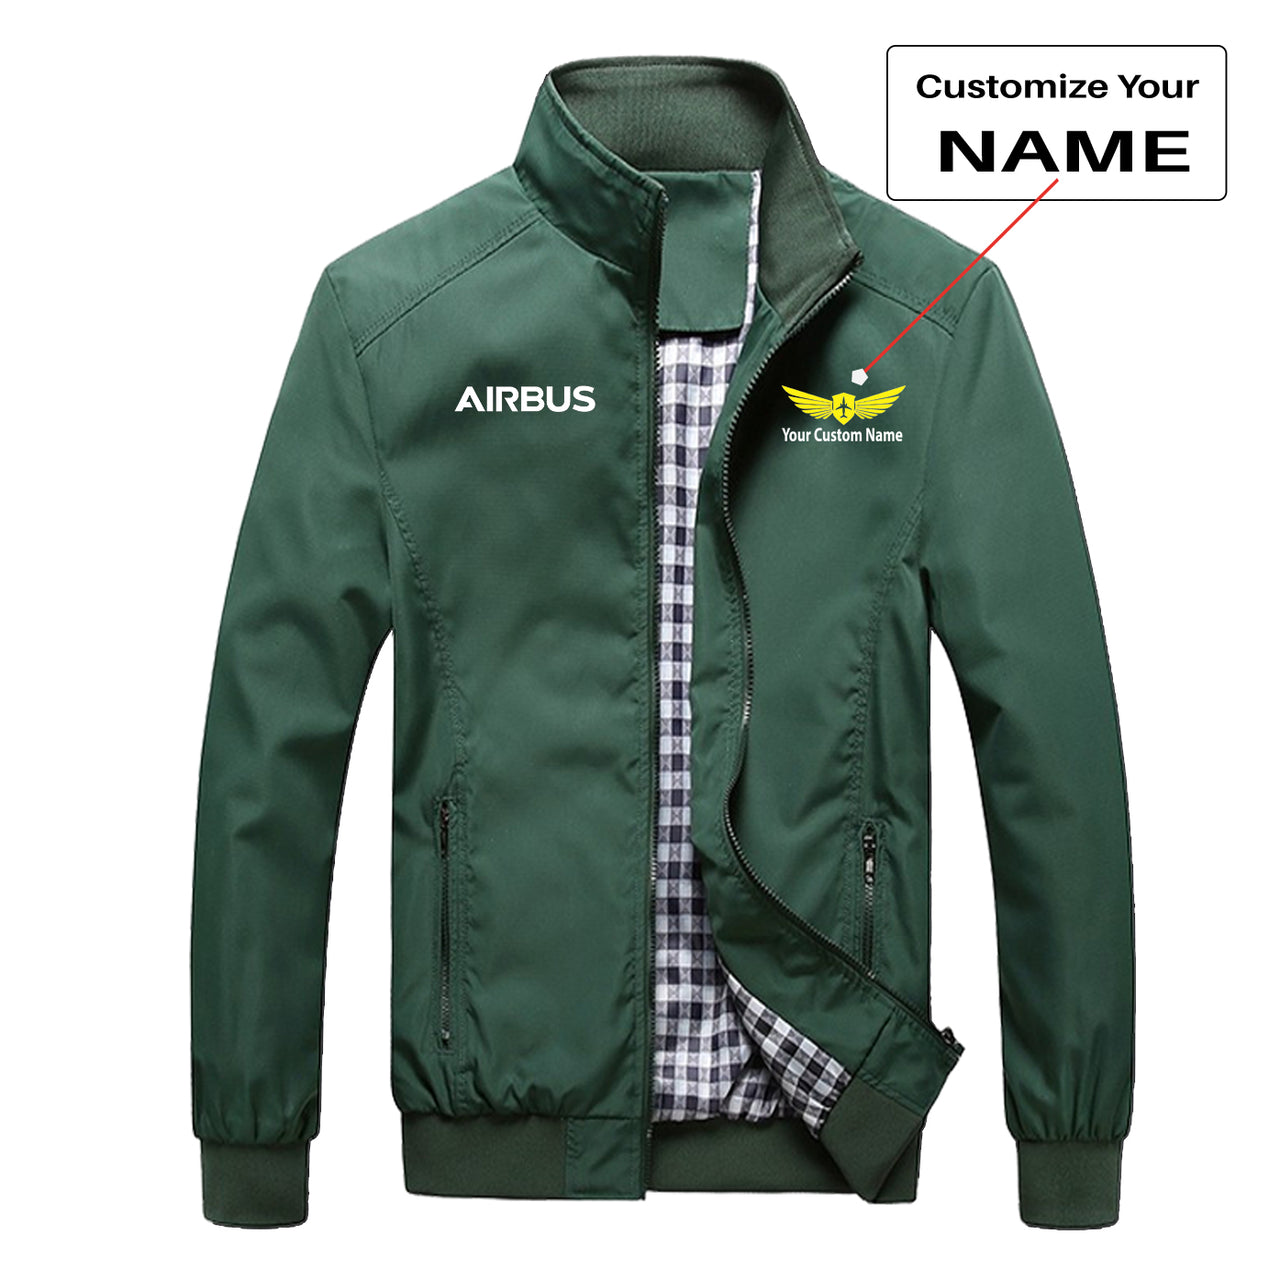 Airbus & Text Designed Stylish Jackets